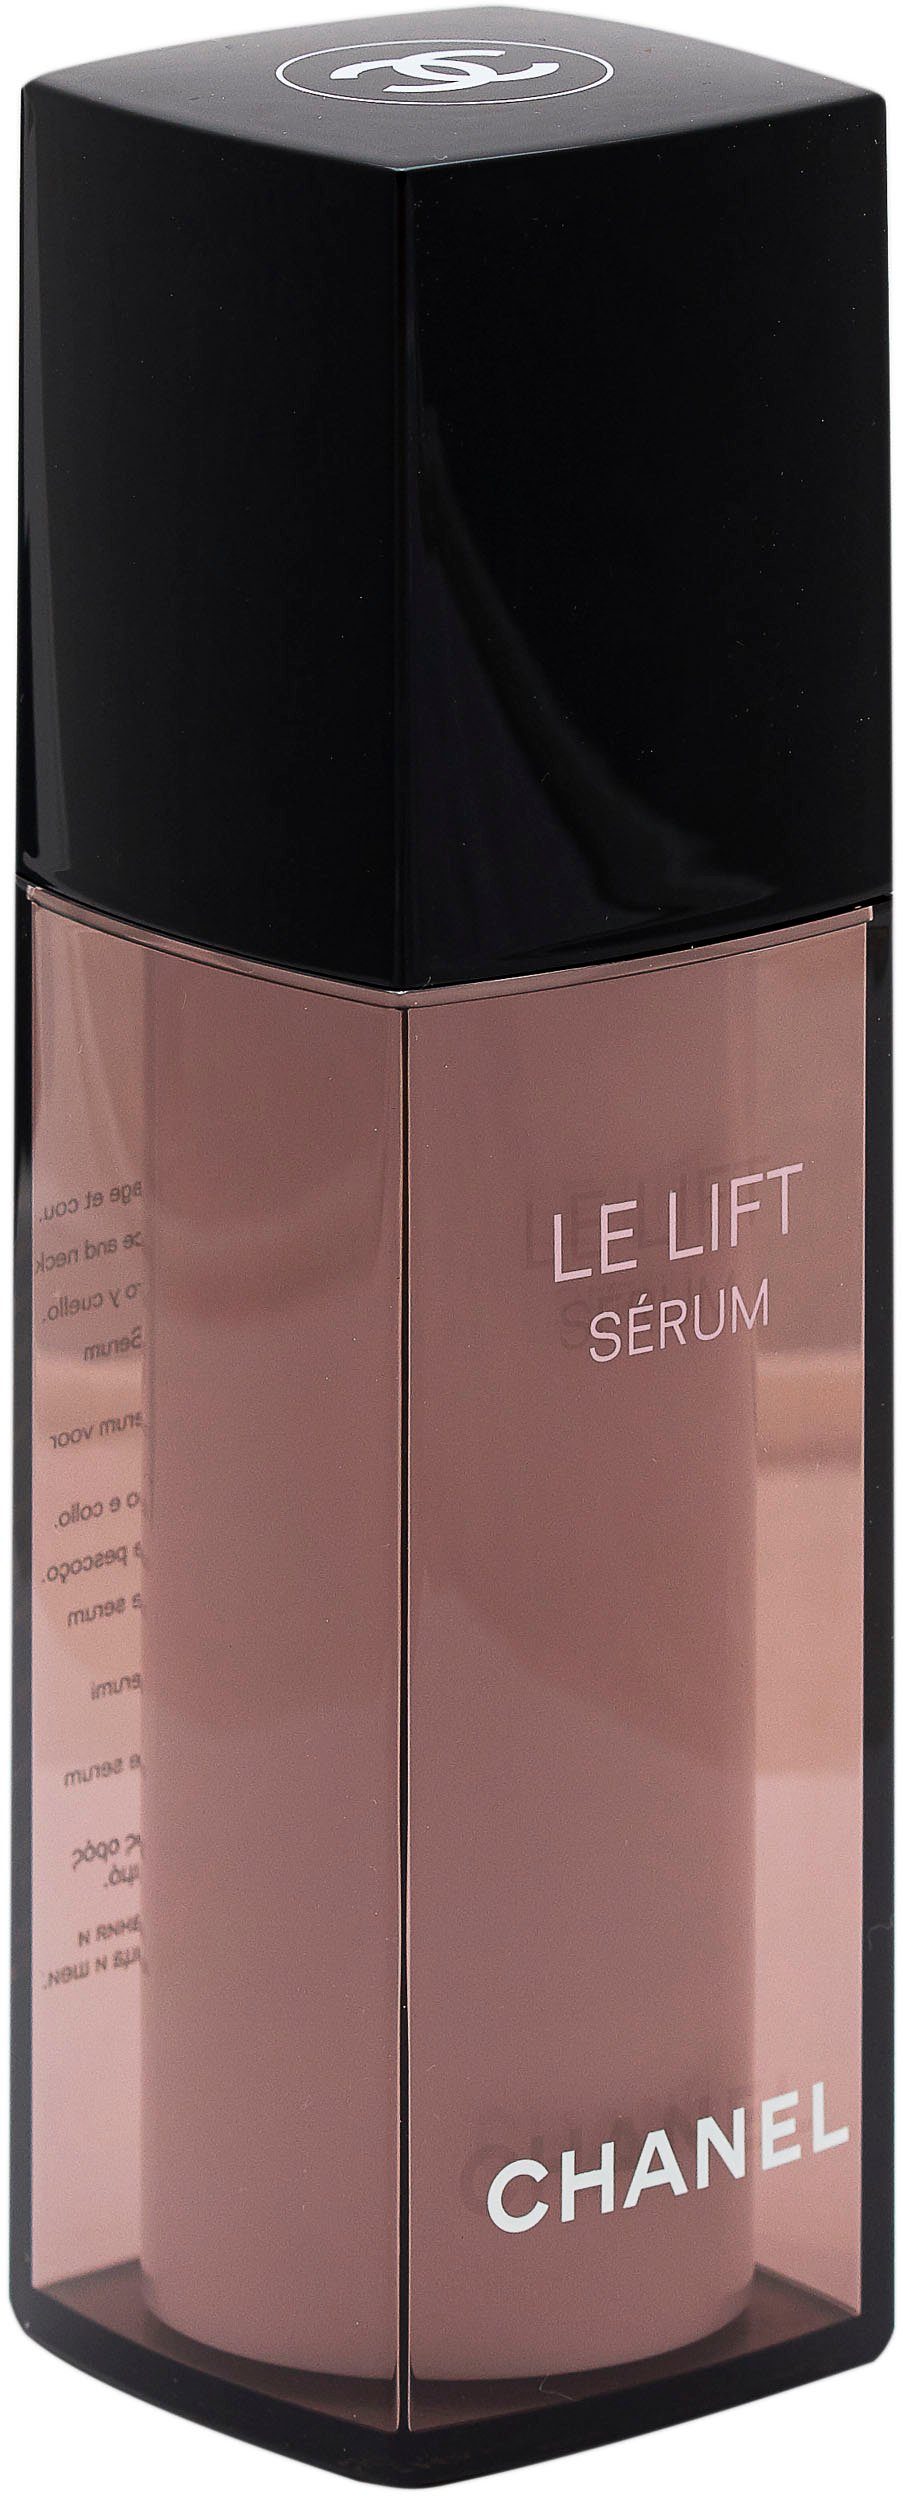 Chanel Lisse-Raffermint Lift CHANEL Gesichtsserum Le Serum